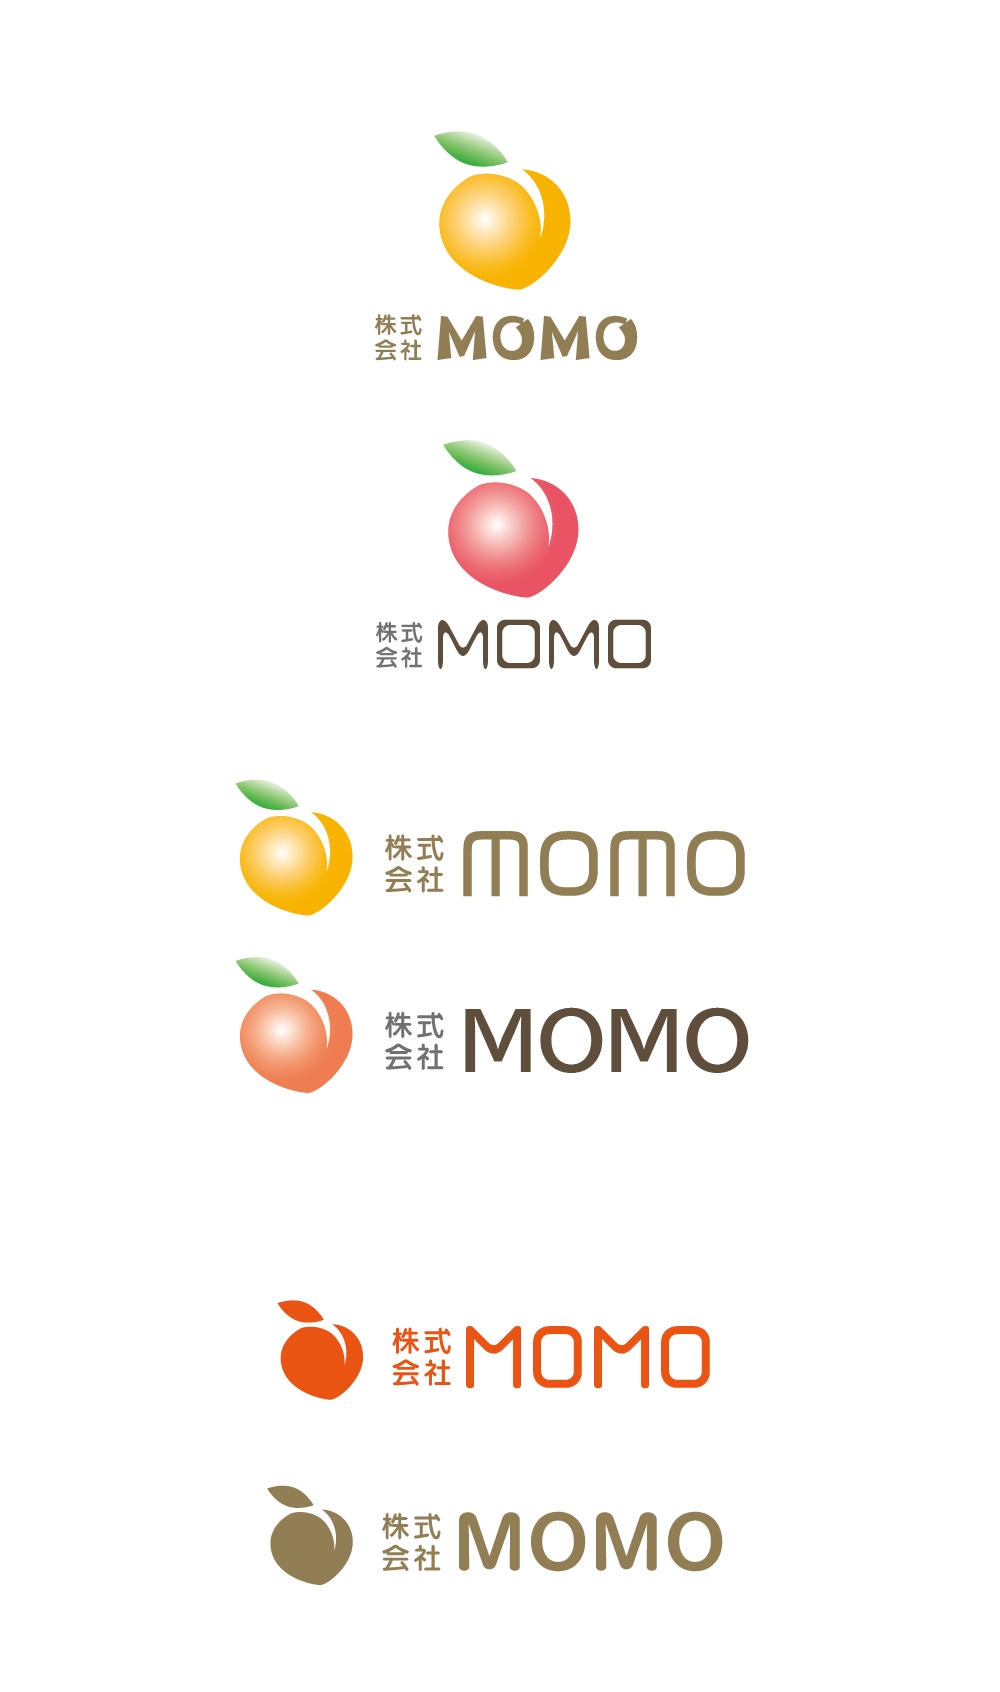 新規設立会社「株式会社MOMO」ロゴマーク制作